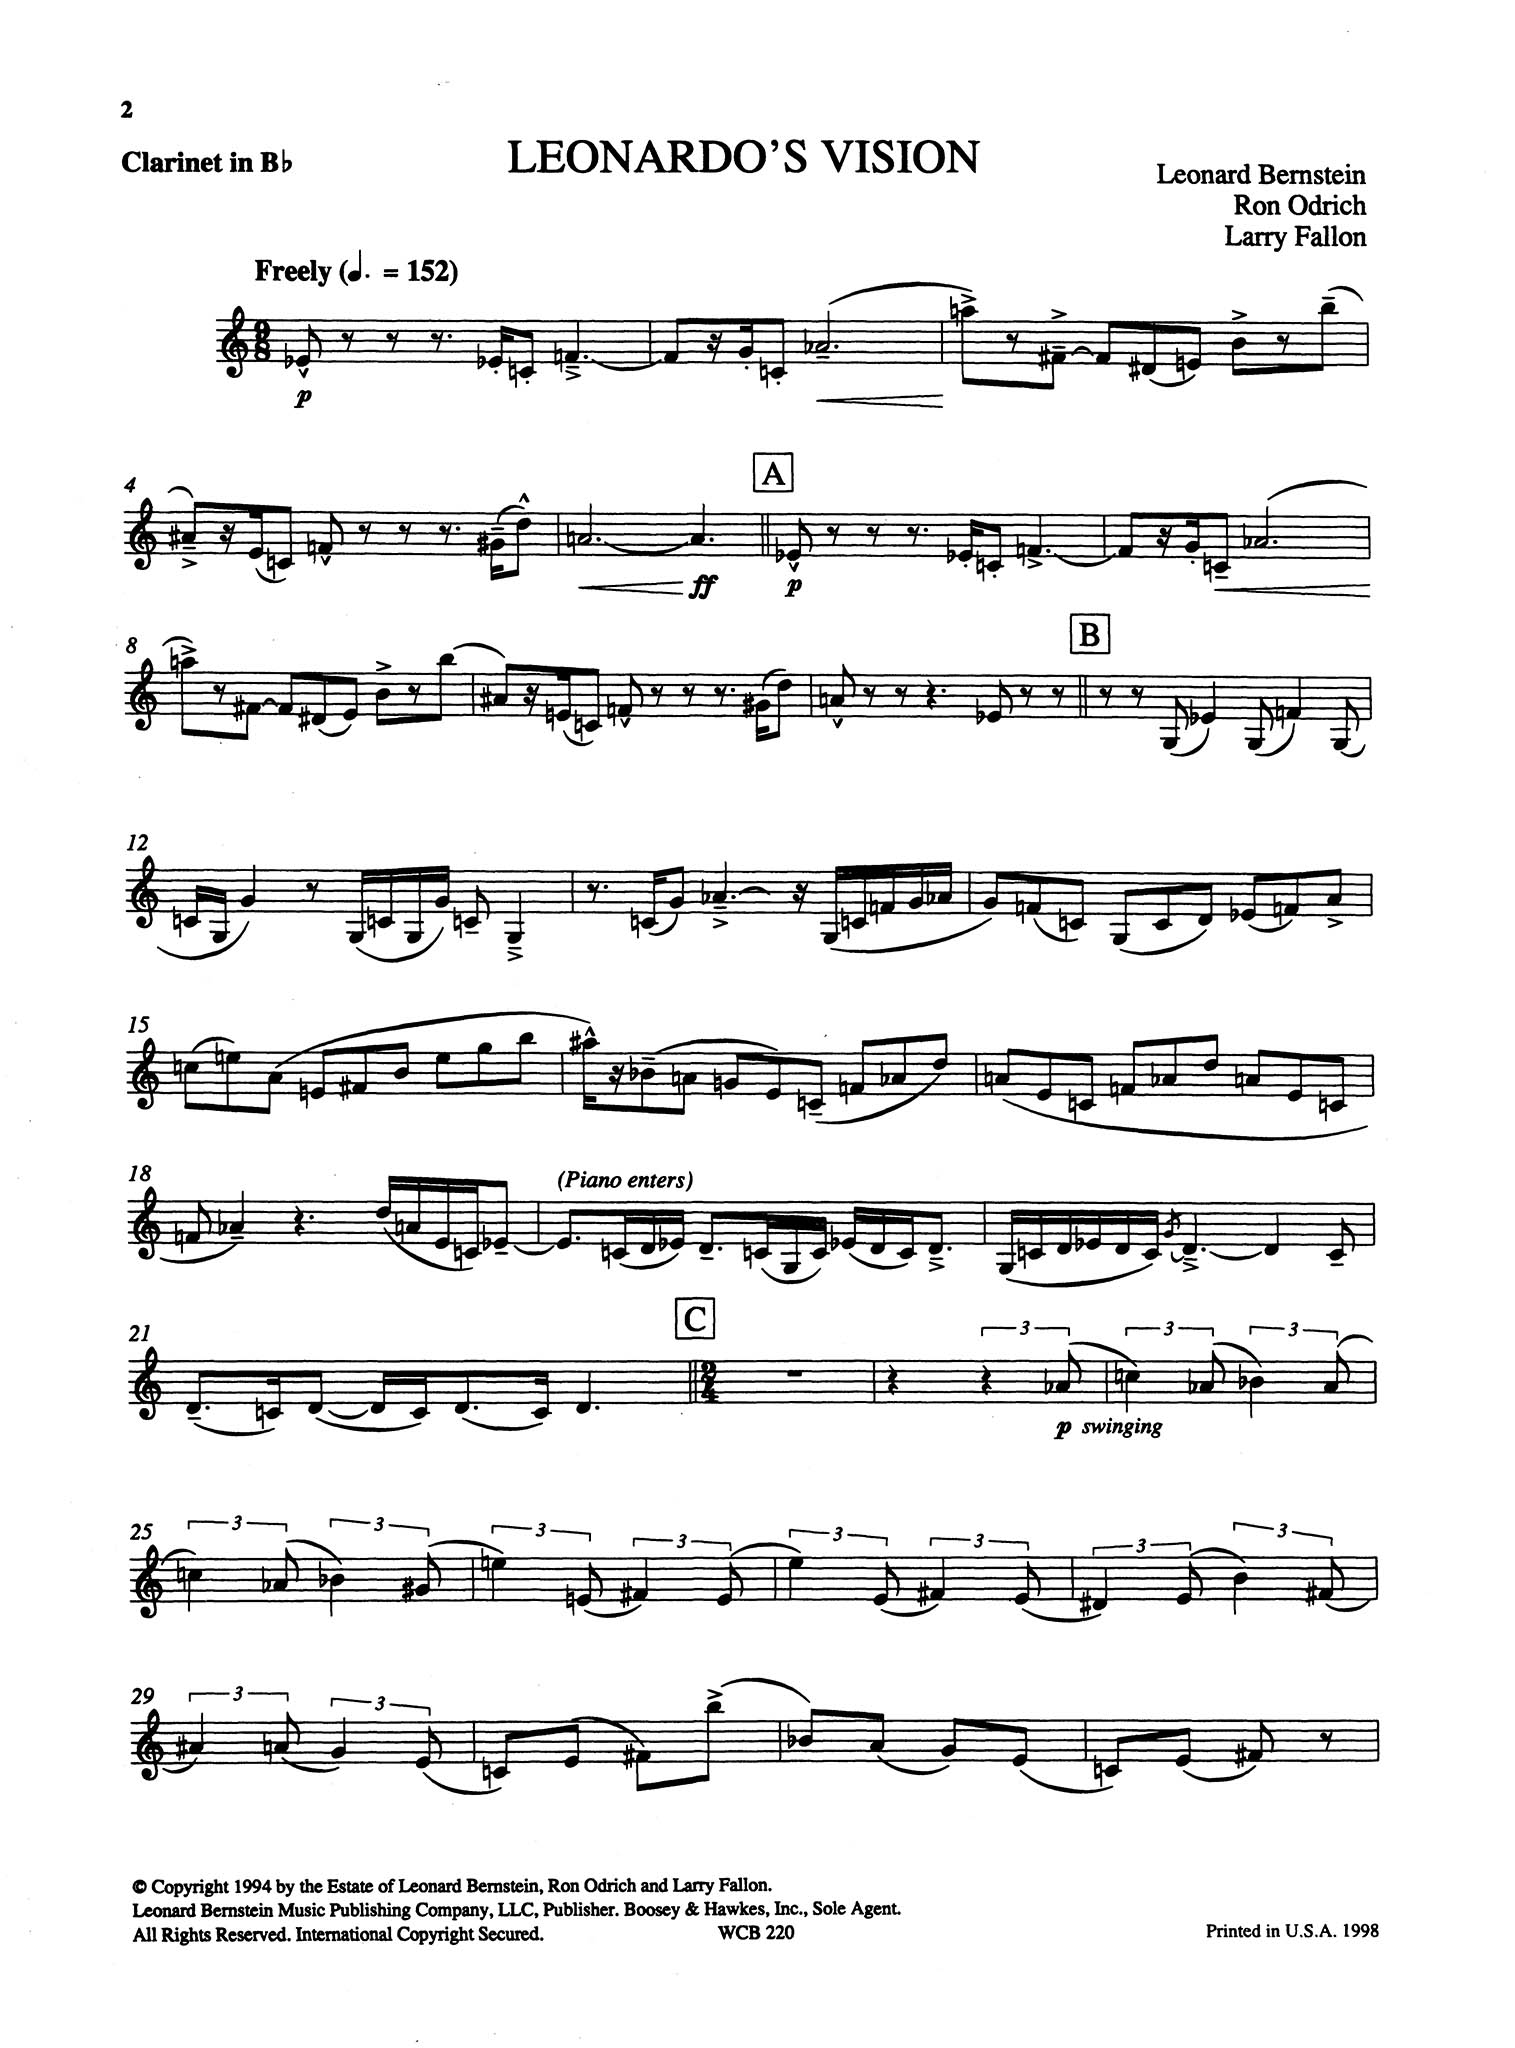 Leonardo’s Vision Bernstein Odrich Fallon for clarinet and piano solo part